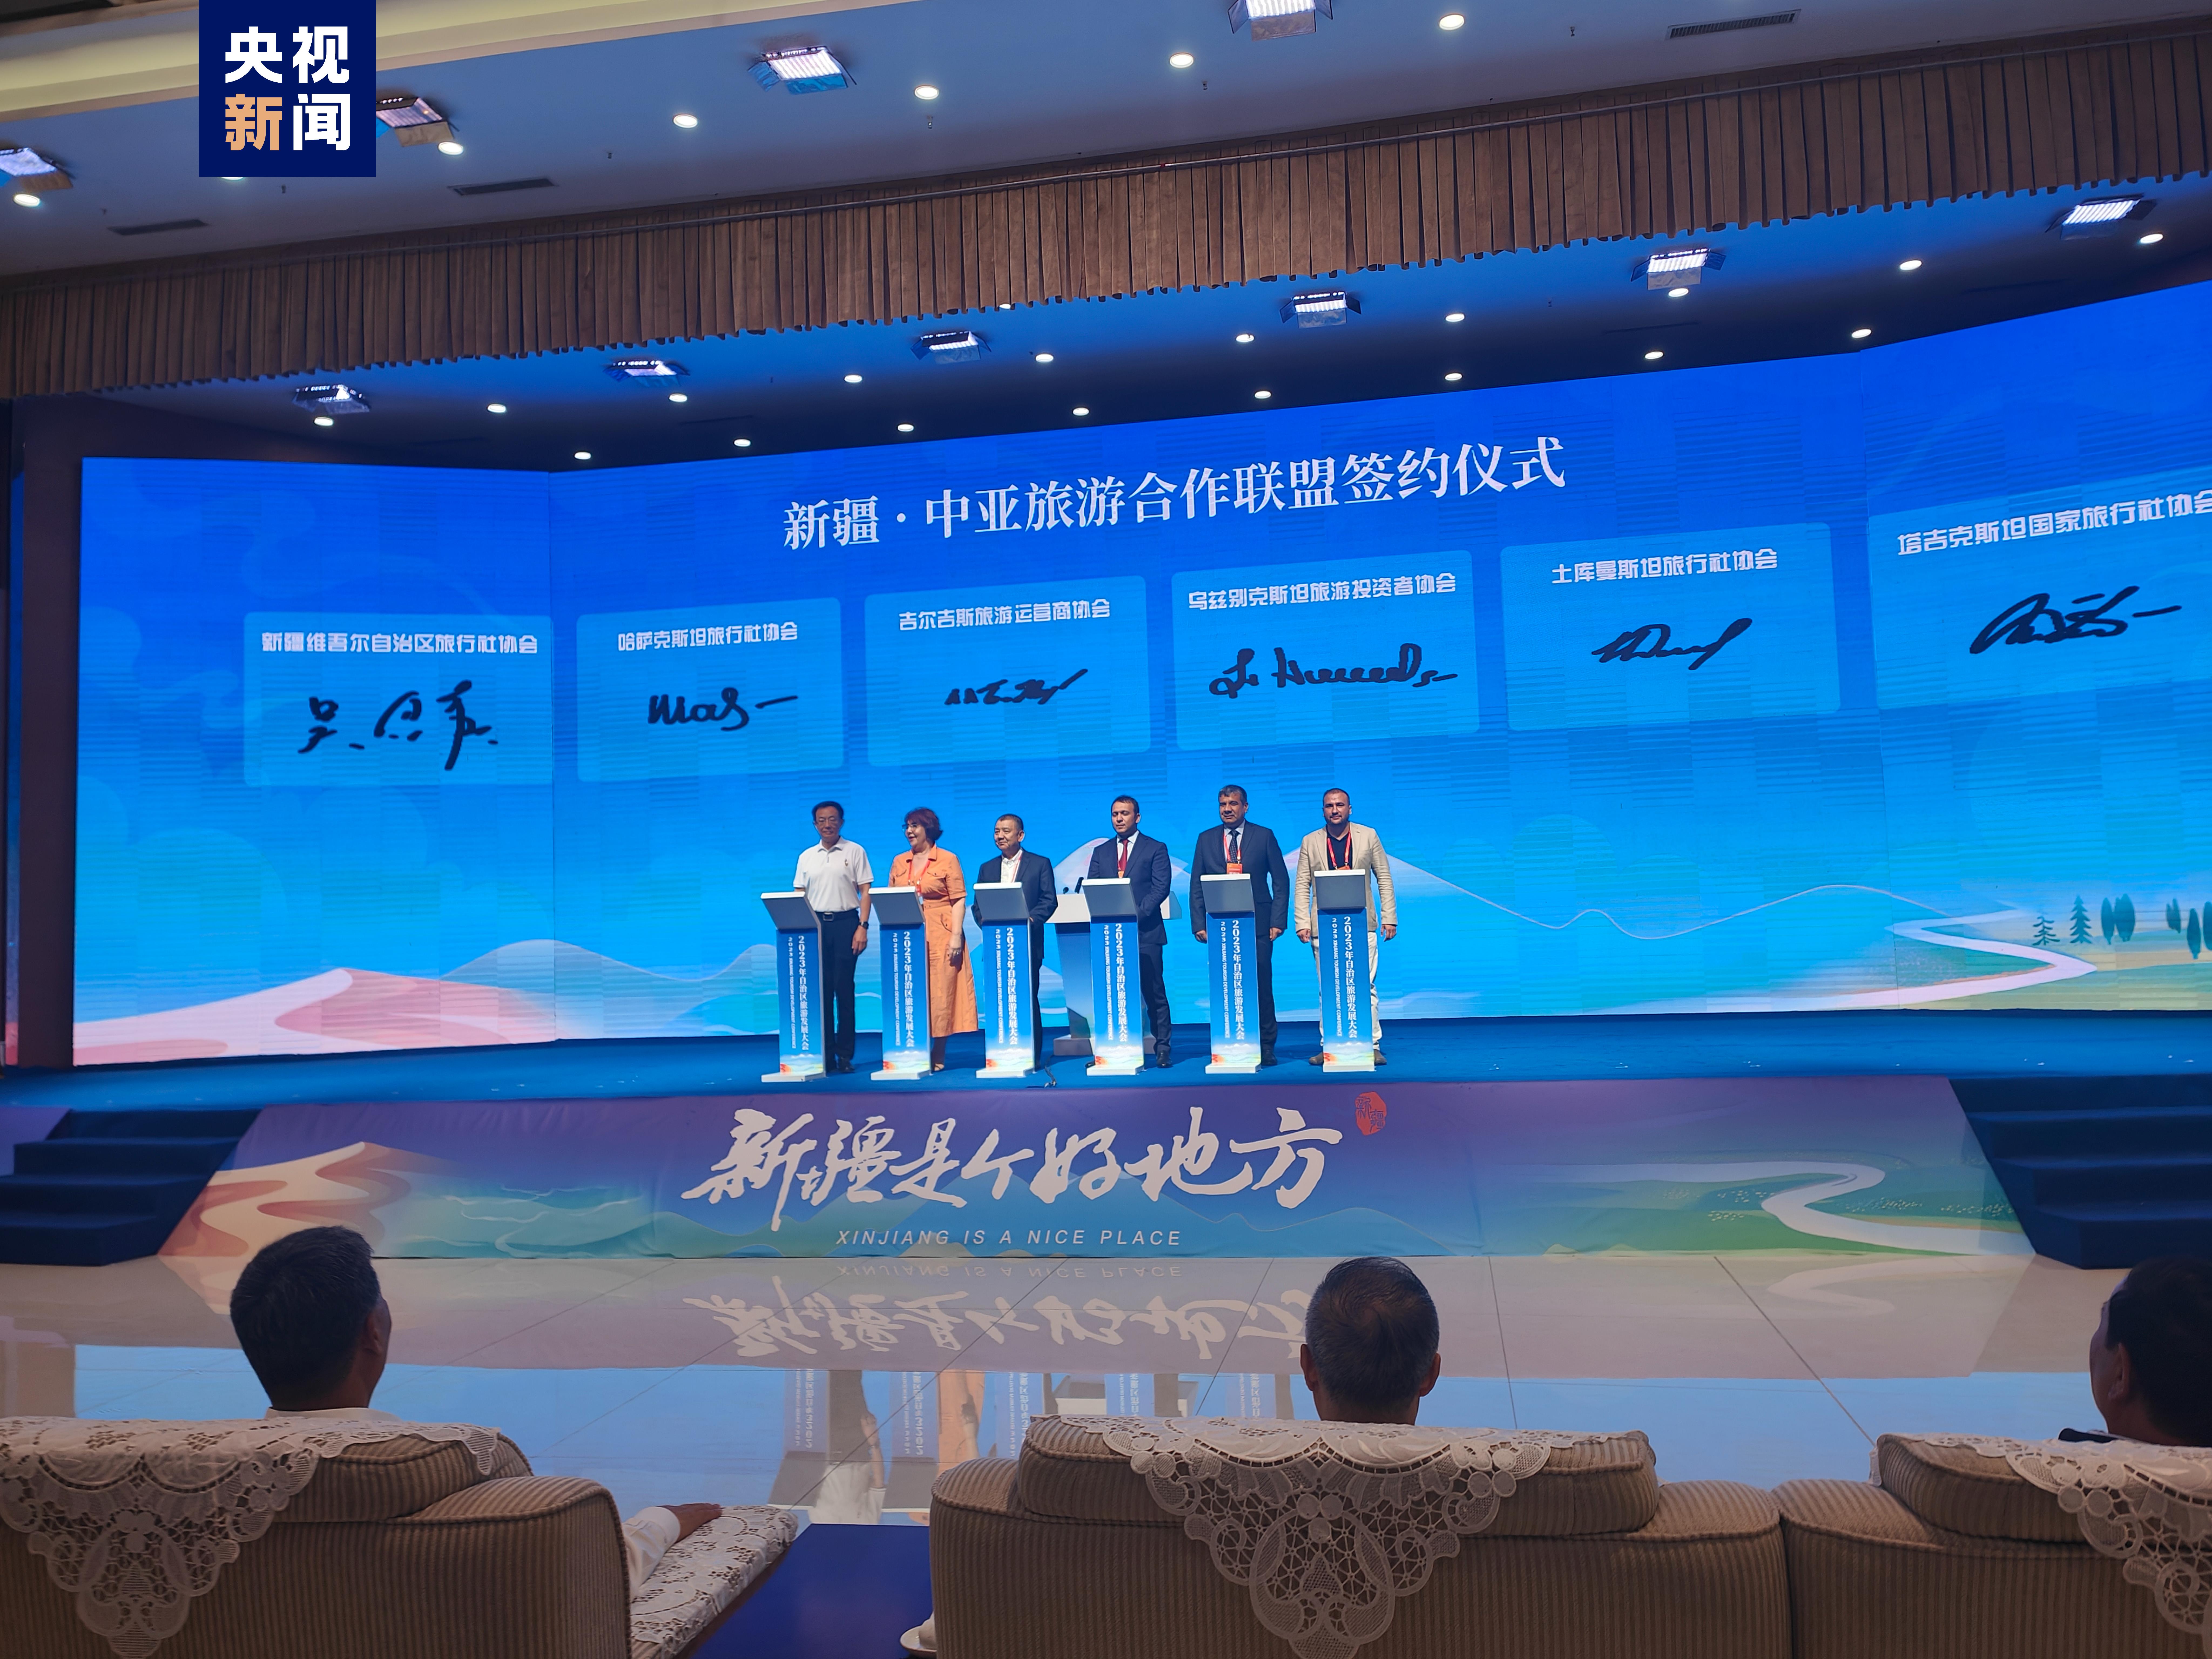 Xinjiang’da 4 milyar dolar değerindeki turizm projesi imzalandı